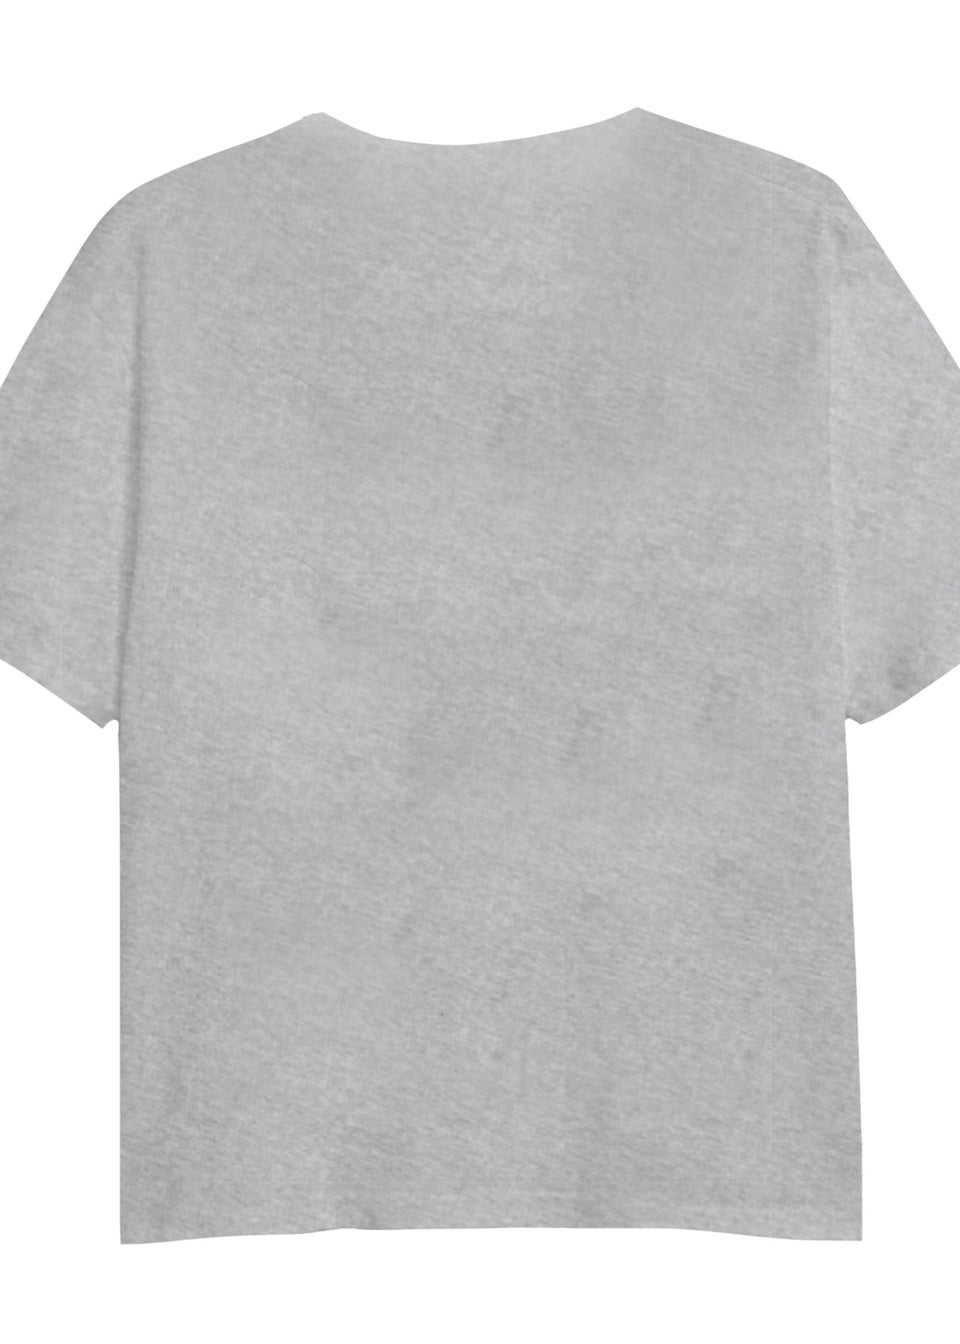 Disney Girls Grey Minnie Mouse Spray Stencil T-Shirt (7-13yrs)